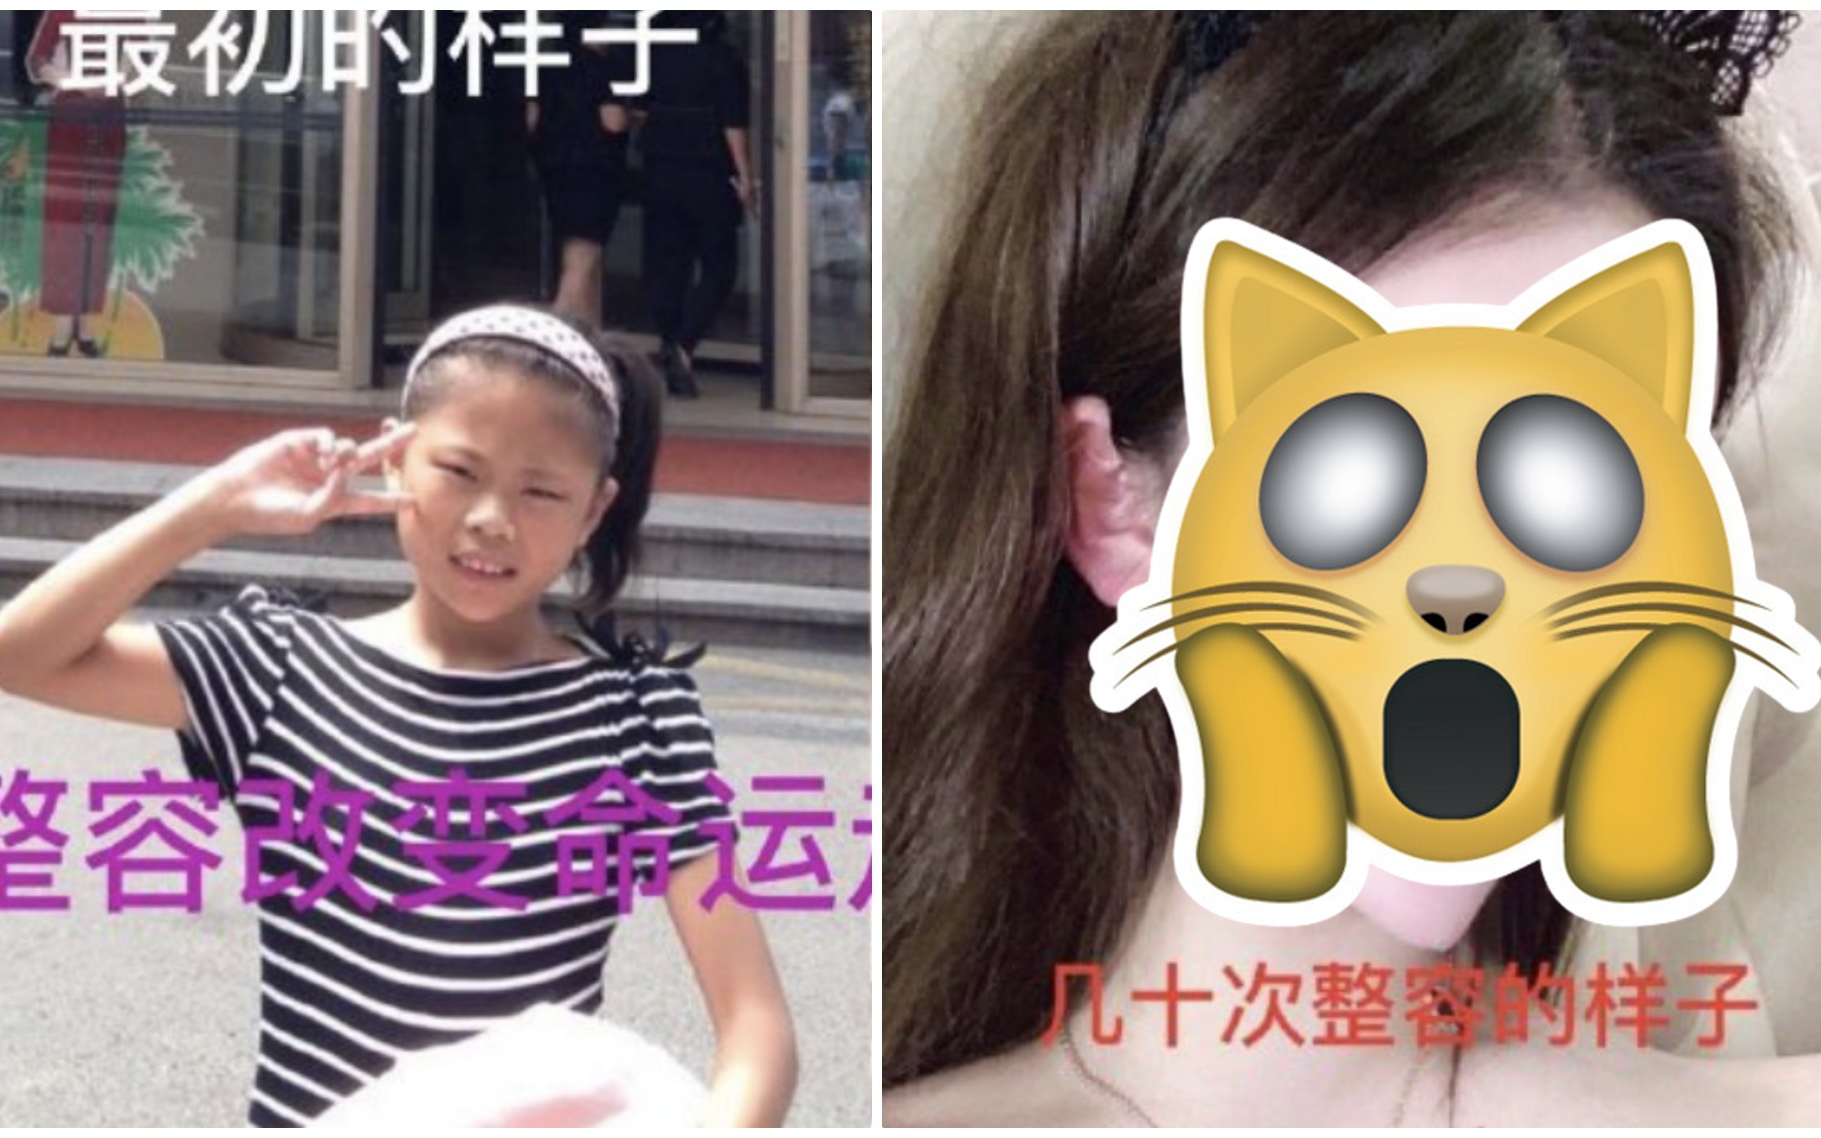 Nghiện dao kéo từ năm 13 tuổi, gương mặt sau hơn 100 lần phẫu thuật thẩm mỹ của hot girl xứ Trung khiến ai nhìn cũng sửng sốt